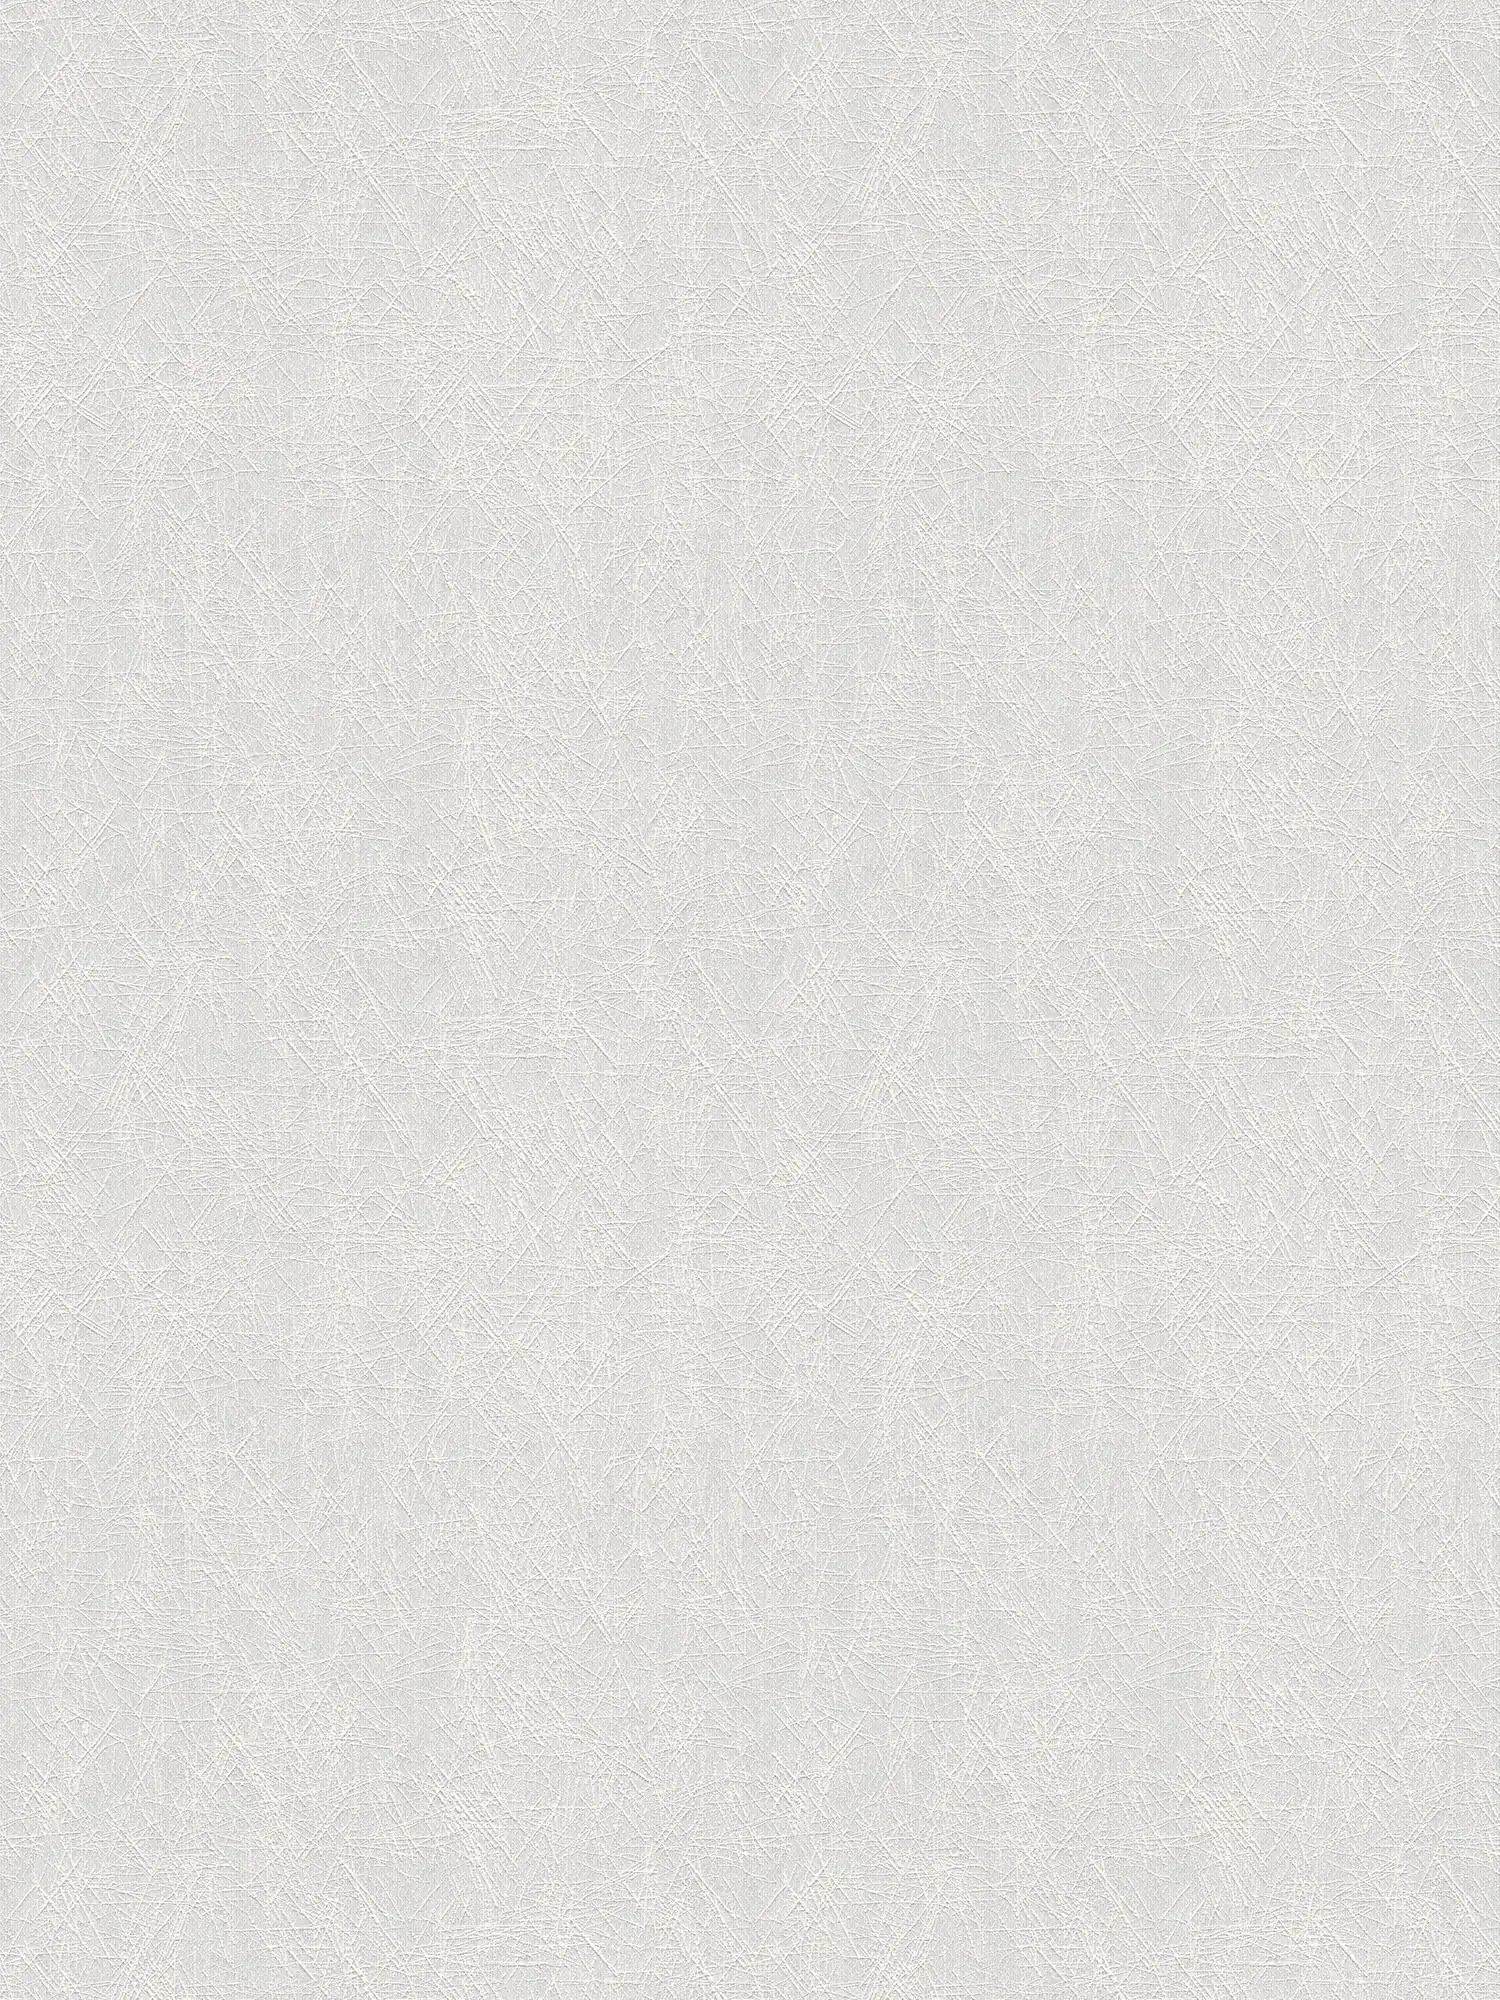 Unifarbene Strukturtapete mit Linientextur – Weiß
